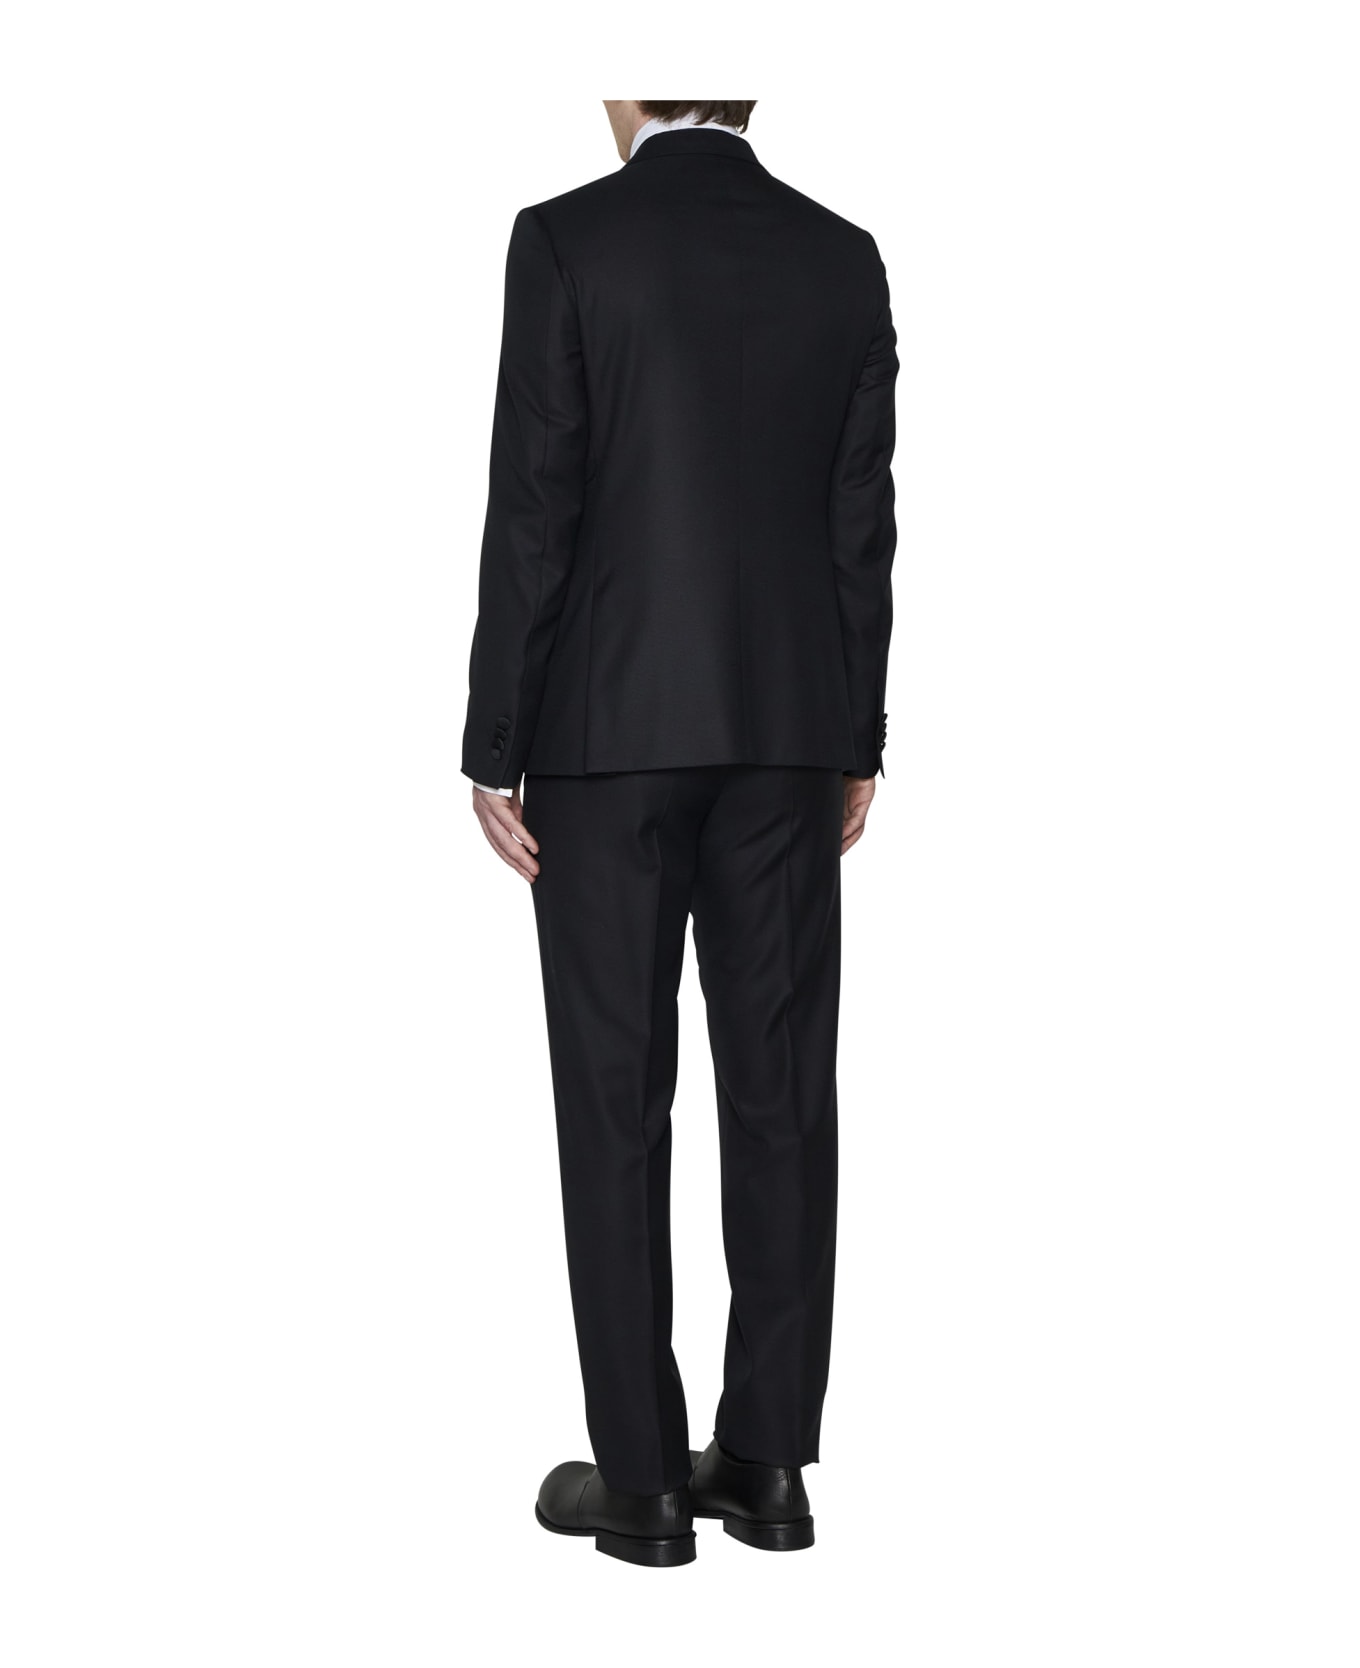 Zegna Suit - Nero スーツ